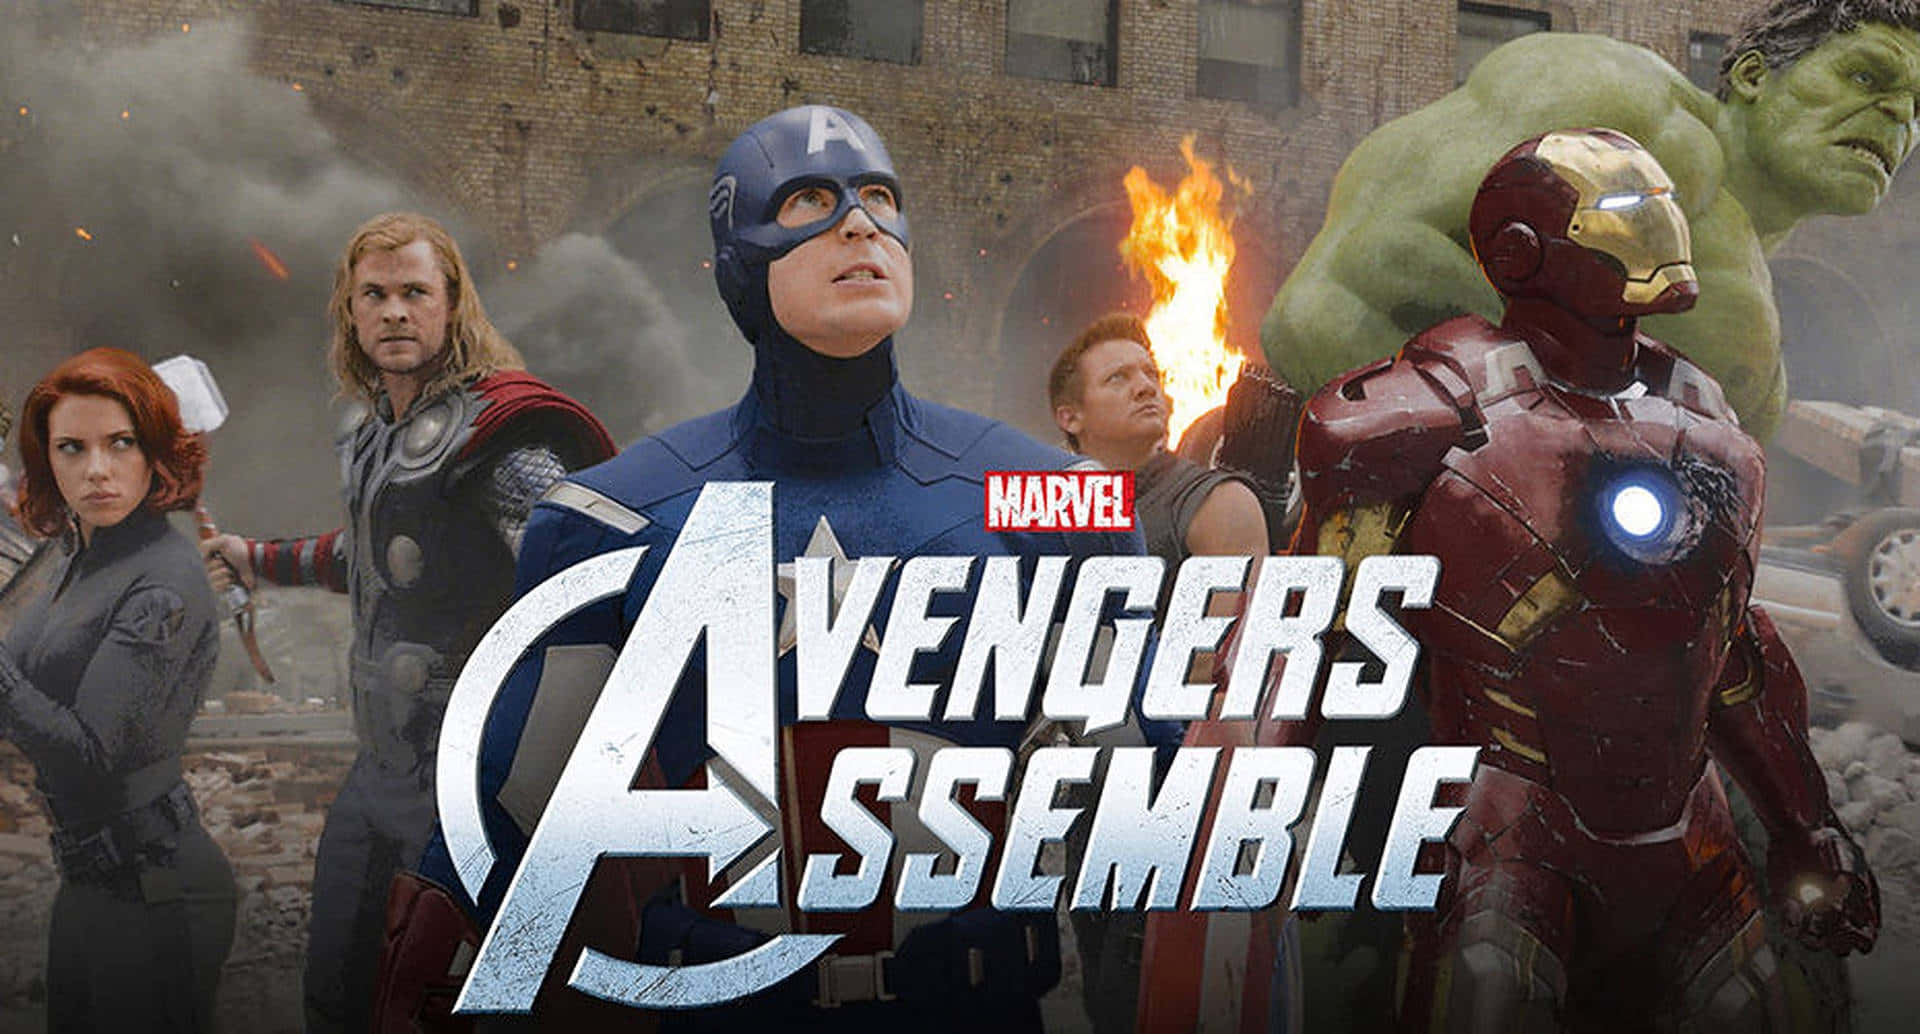 Iron Man og Captain America forener sig for at bekæmpe superskurken.